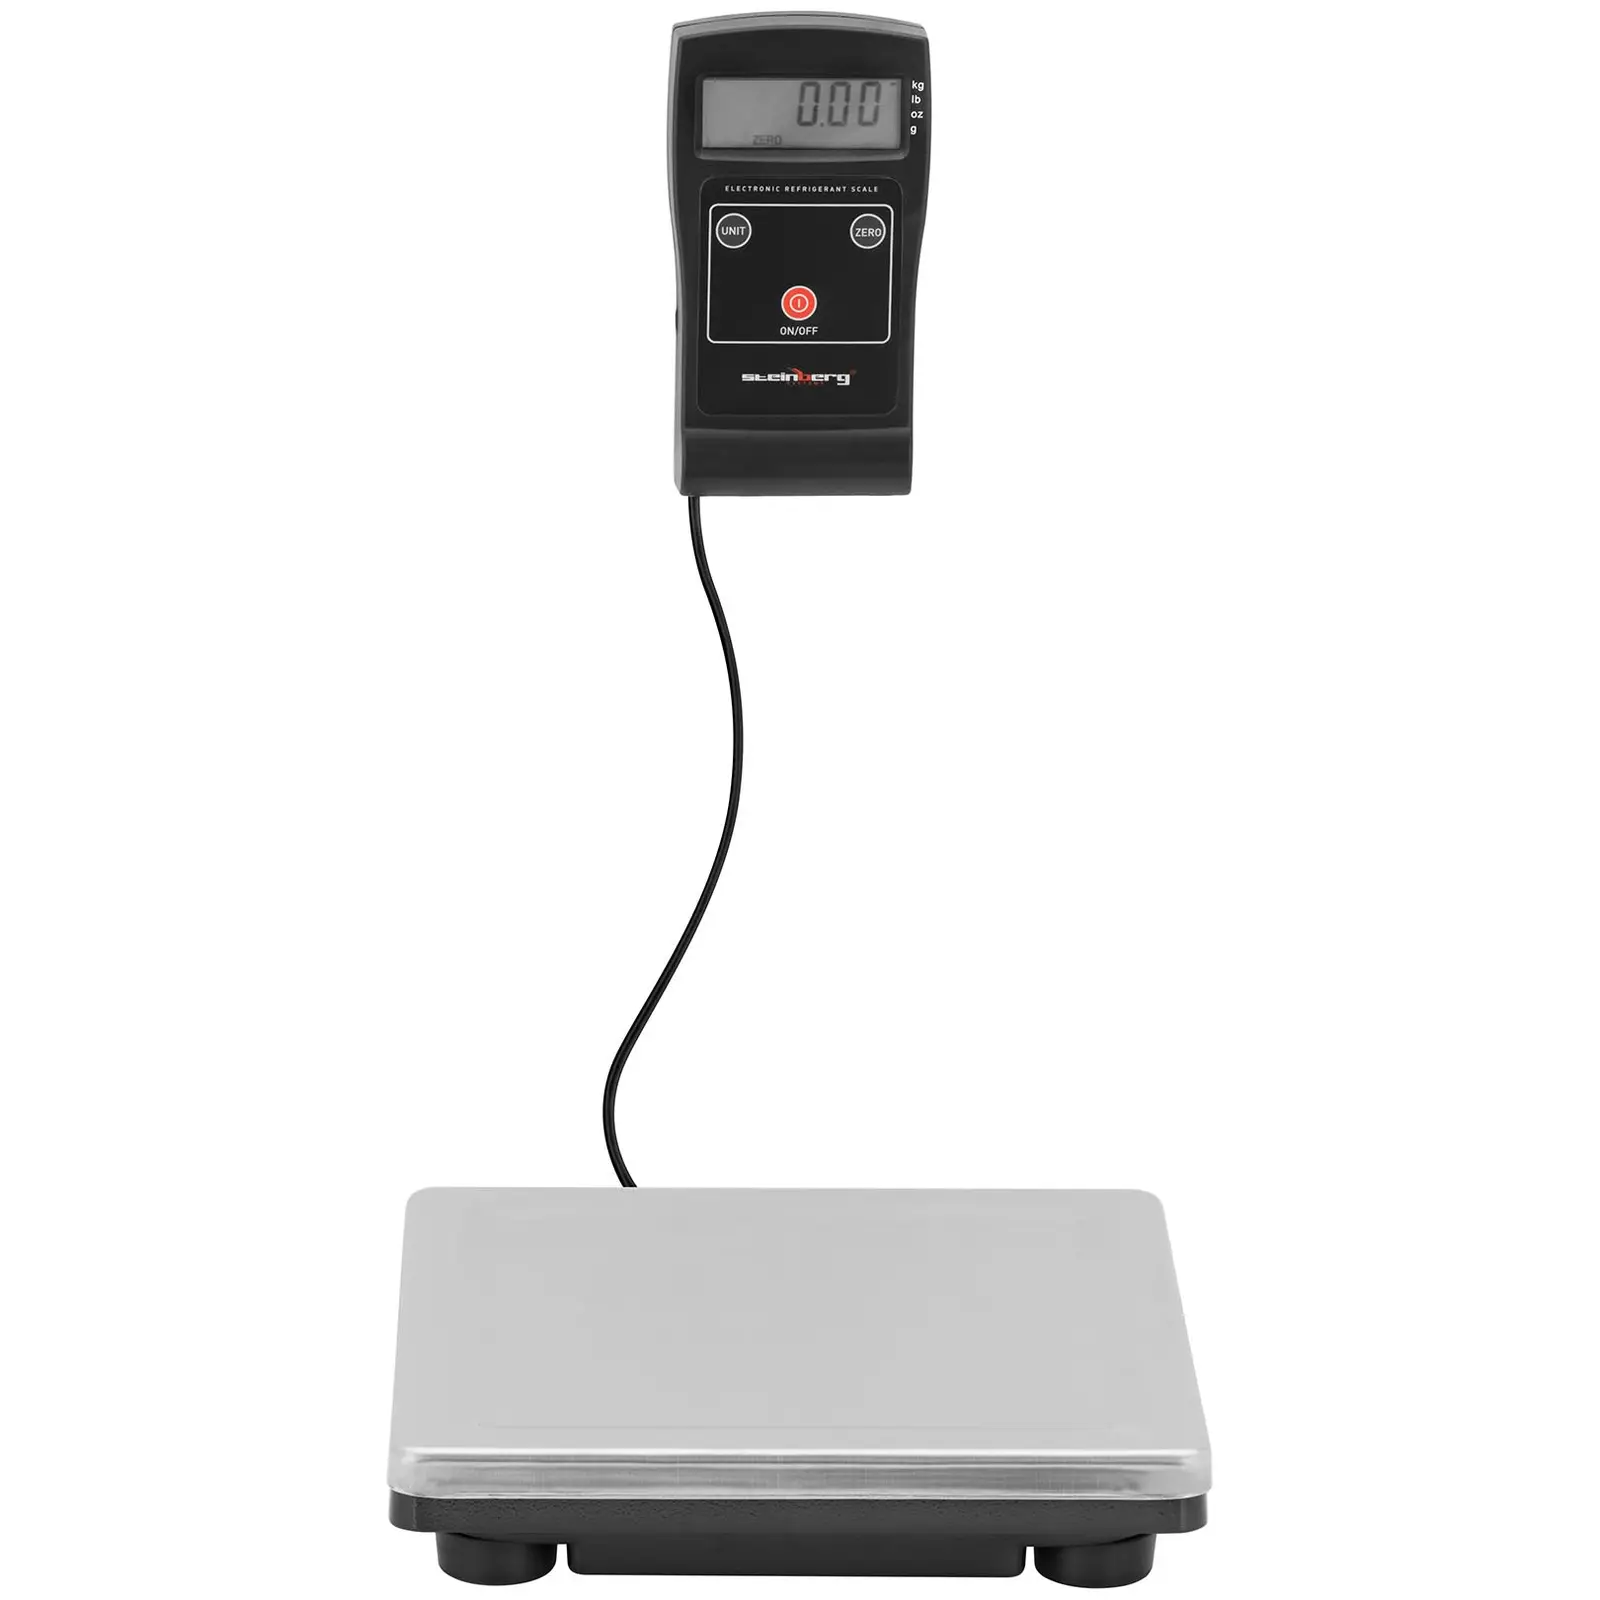 Refrigerant Scale - 80 kg - Precision: 0.02 kg - kg / lb / g / oz